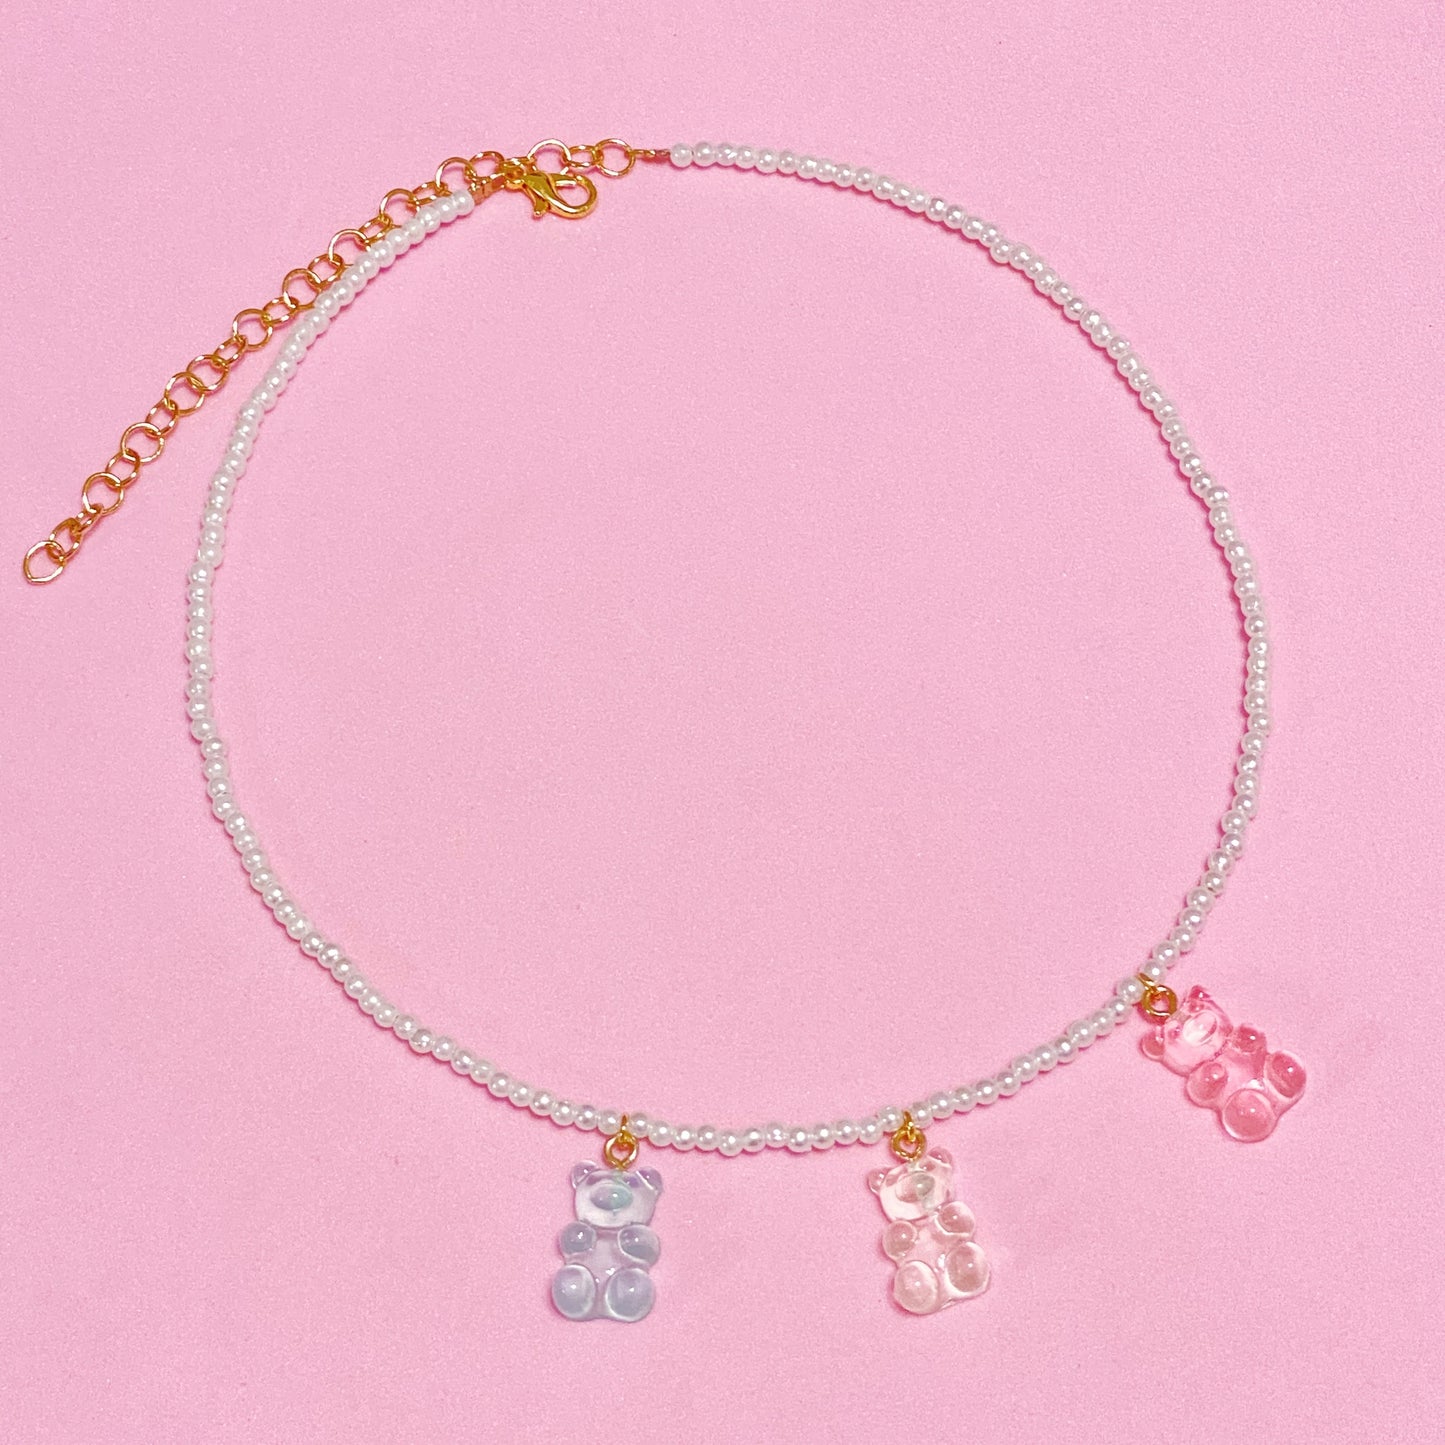 Sweet Gummy Bears Necklace - ROCKmint